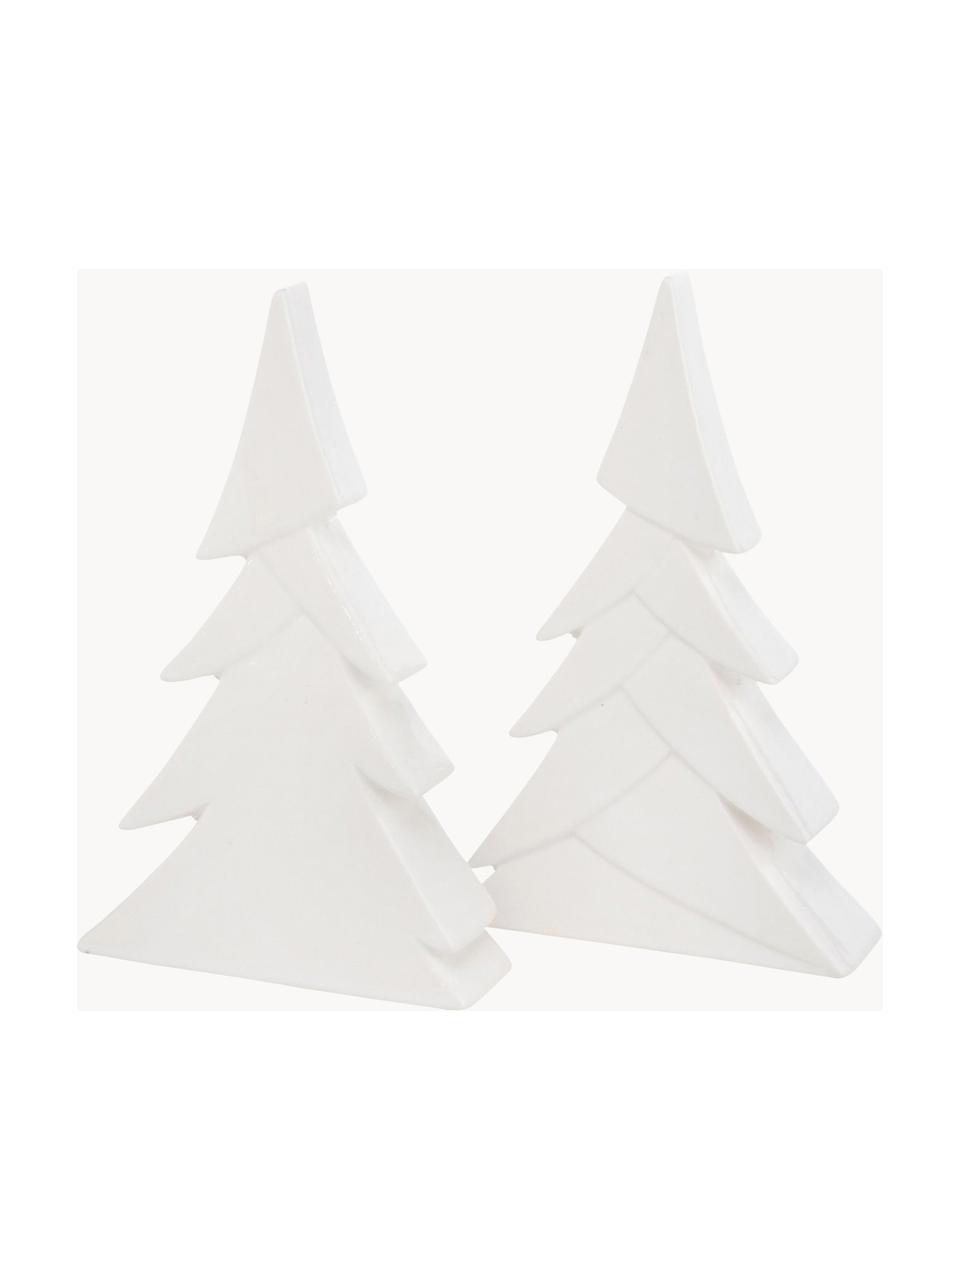 Handgefertigtes Deko-Weihnachtsbäume-Set Jade, 2-tlg., Steingut, Weiß, 12 x H 19 cm